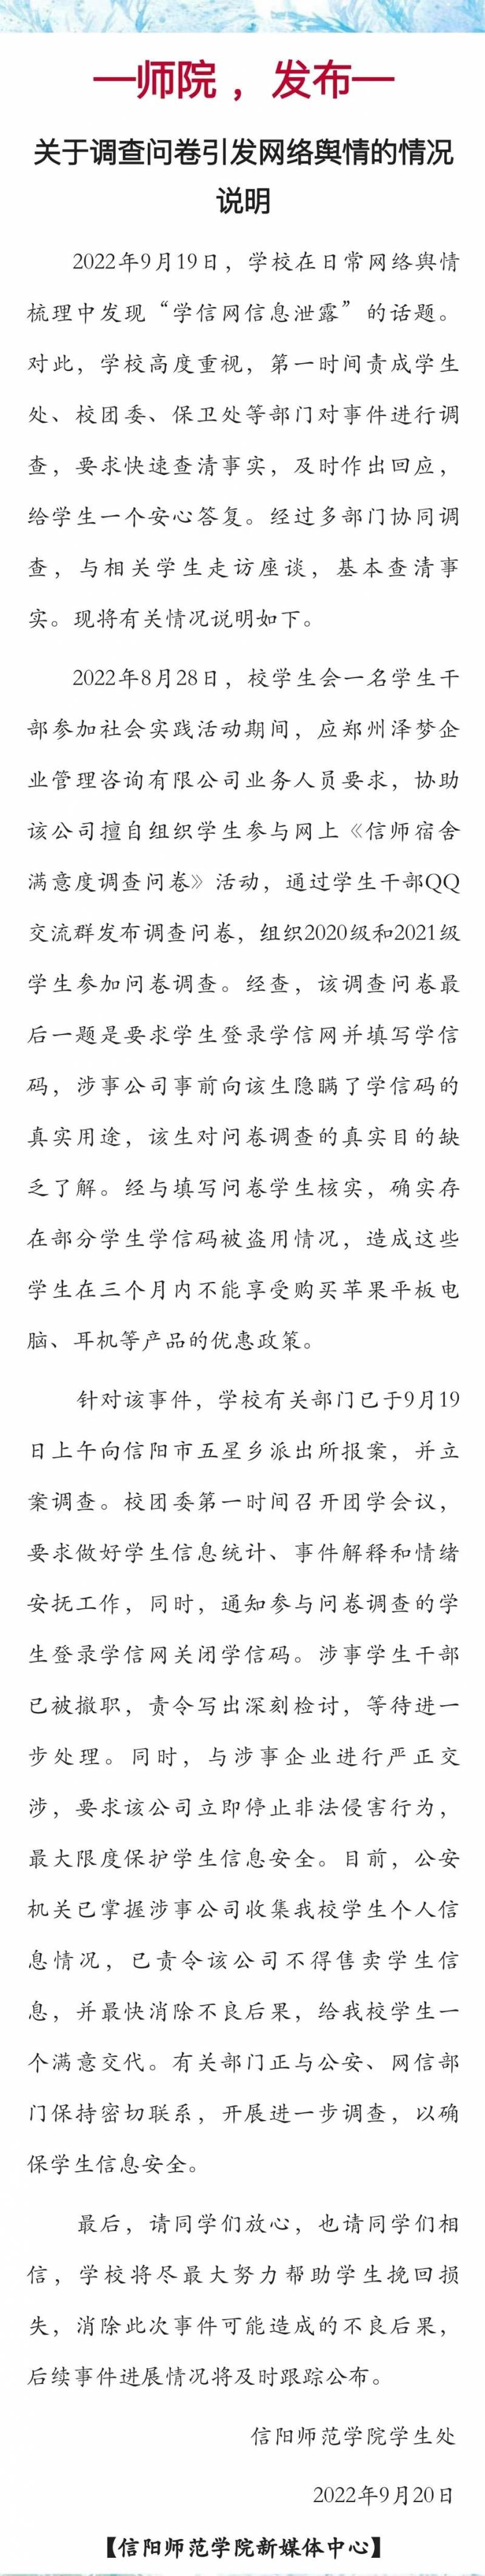 信阳师范大学微博回应信息泄露事件，已采取法律手段，正加强信息安全。